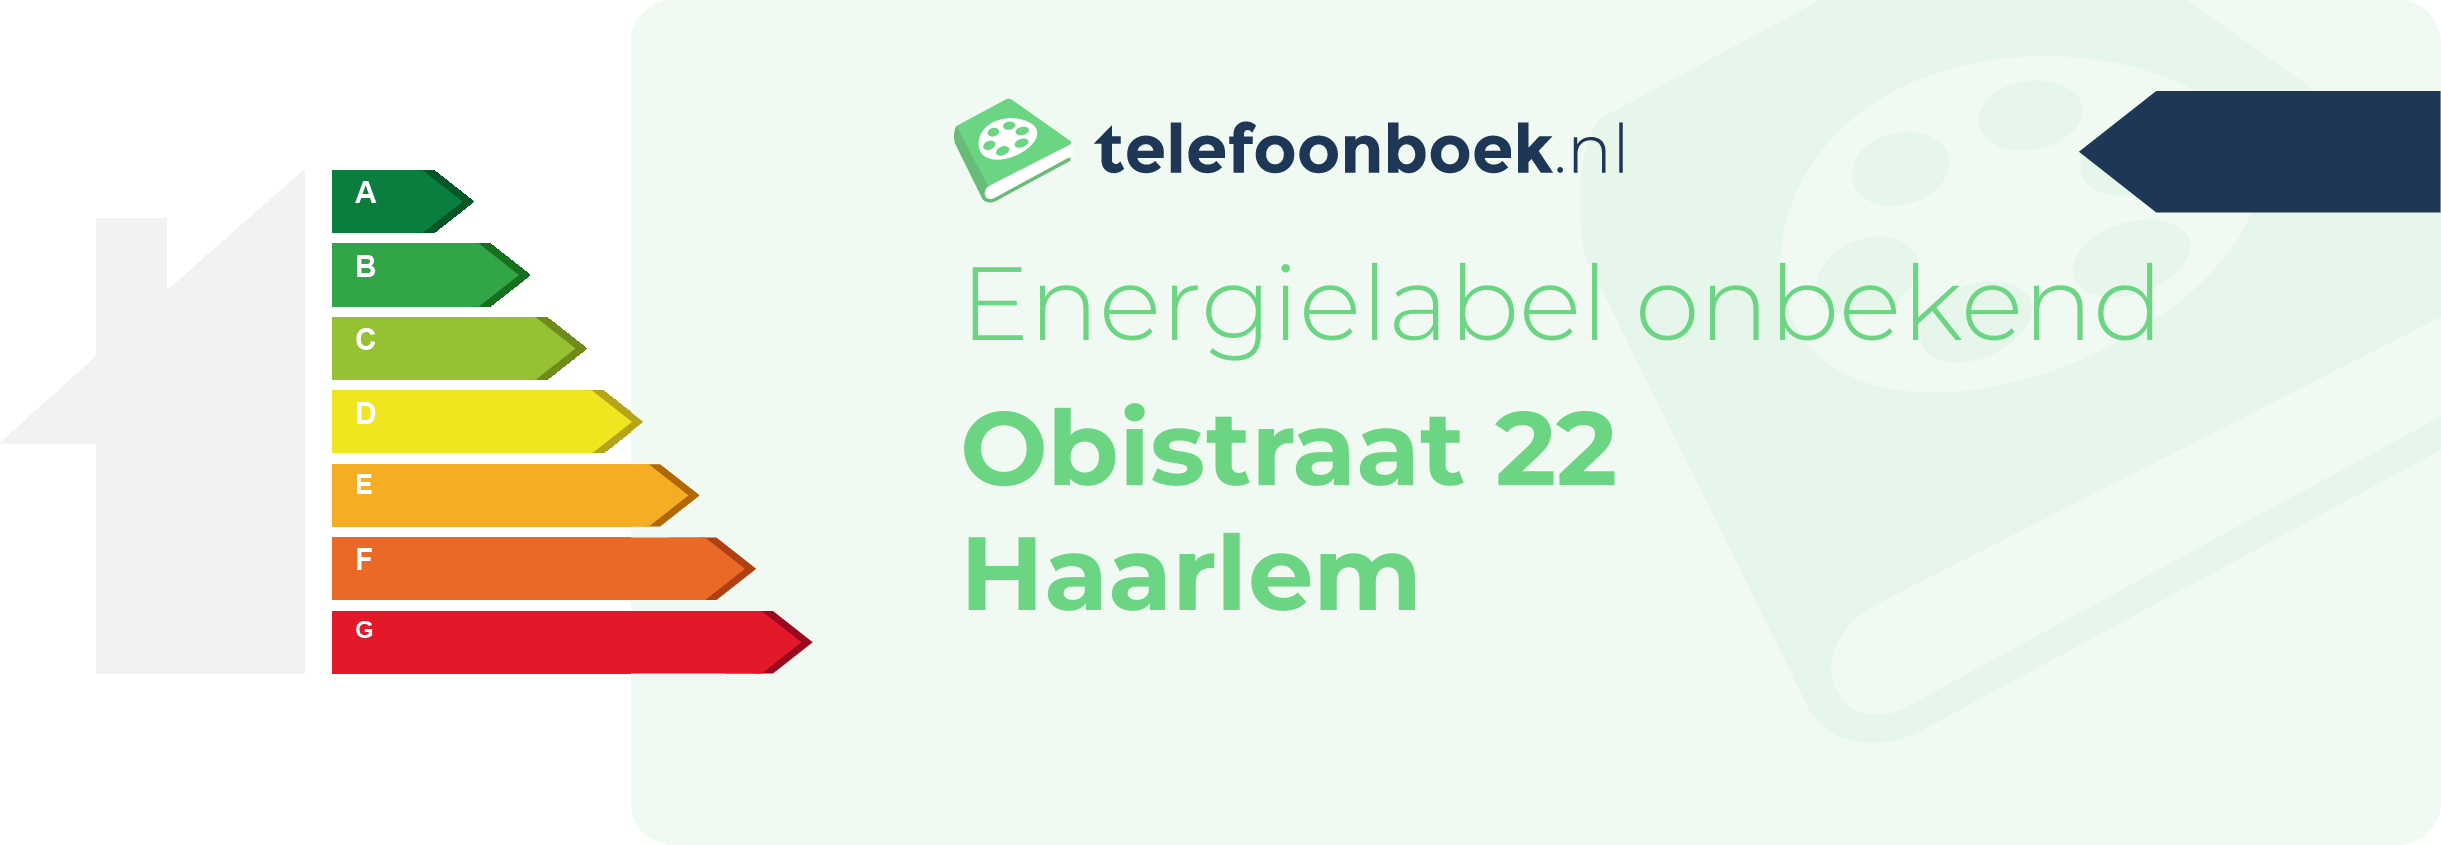 Energielabel Obistraat 22 Haarlem